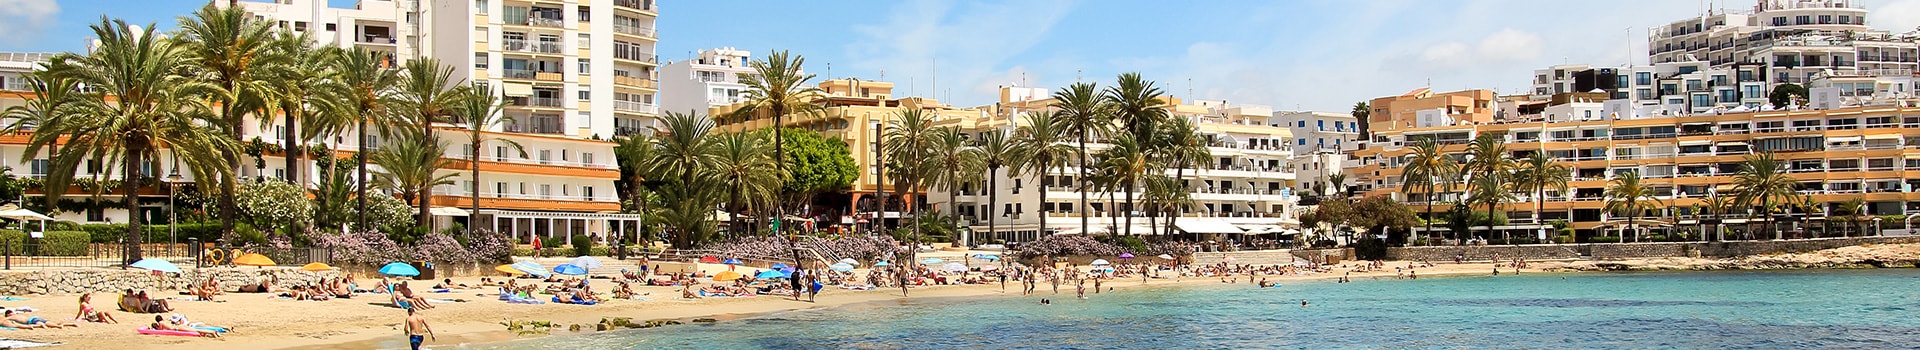 Biglietti da Nave da Palma di Maiorca a Ibiza